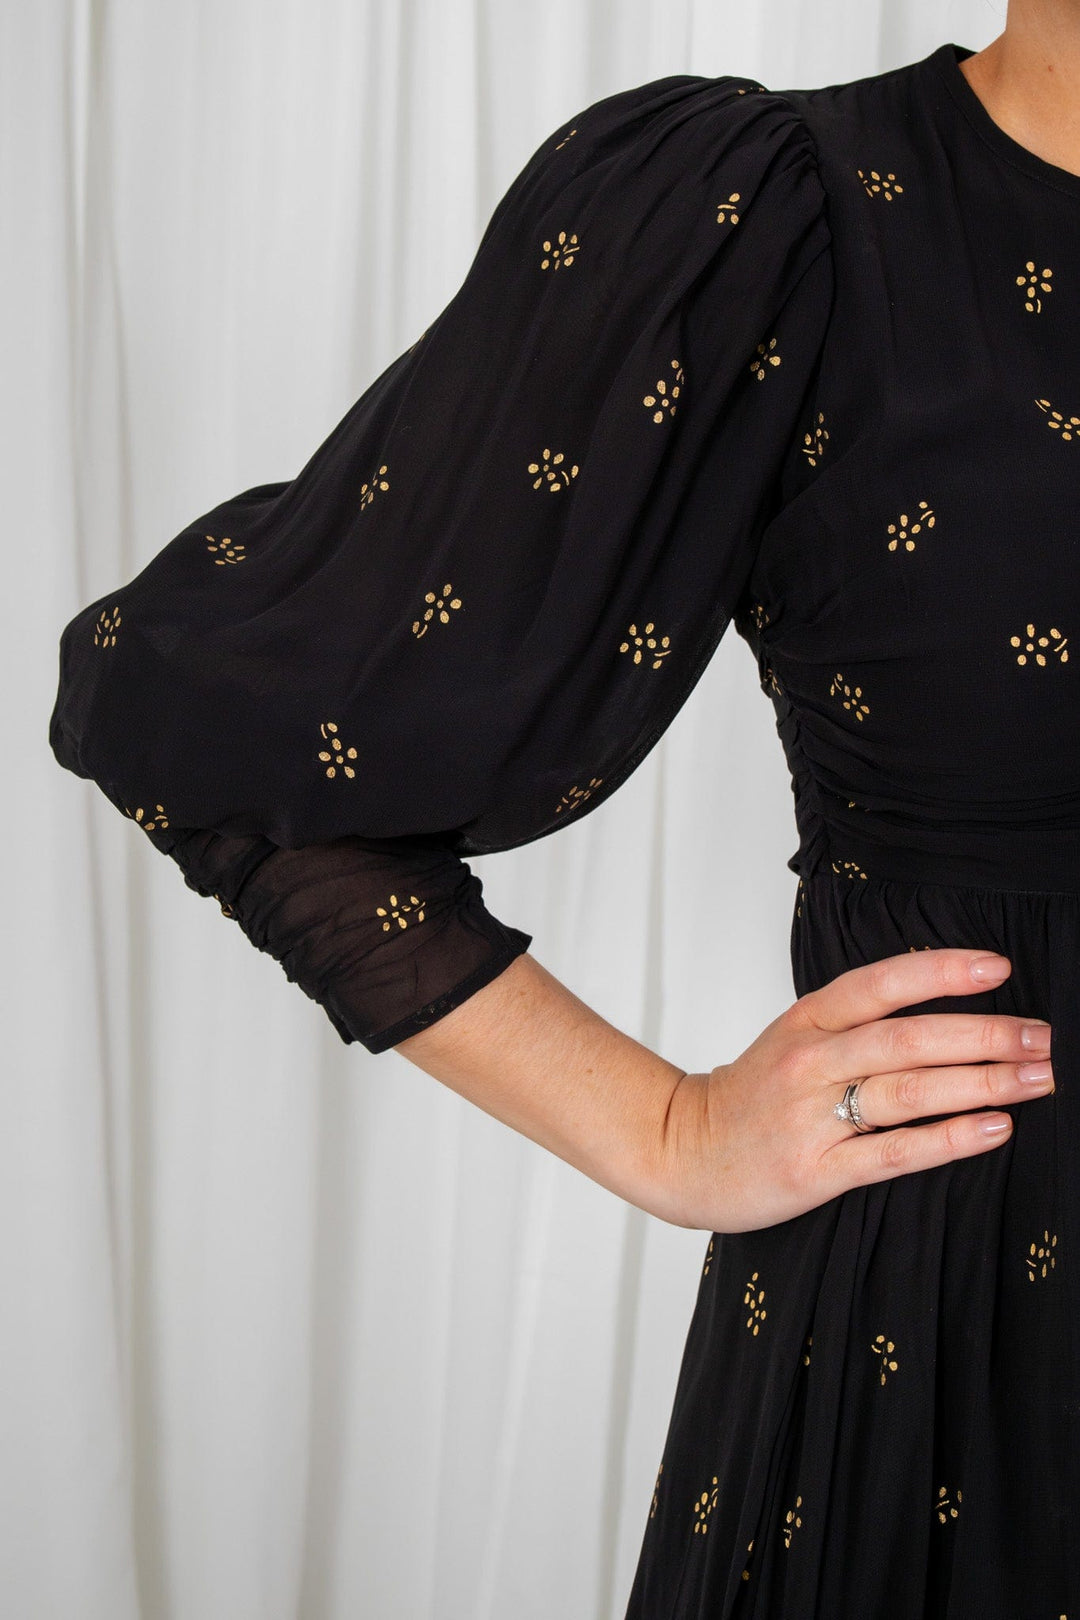 Georgette Gathers Dress Black Daisy | Kjoler | Smuk - Dameklær på nett